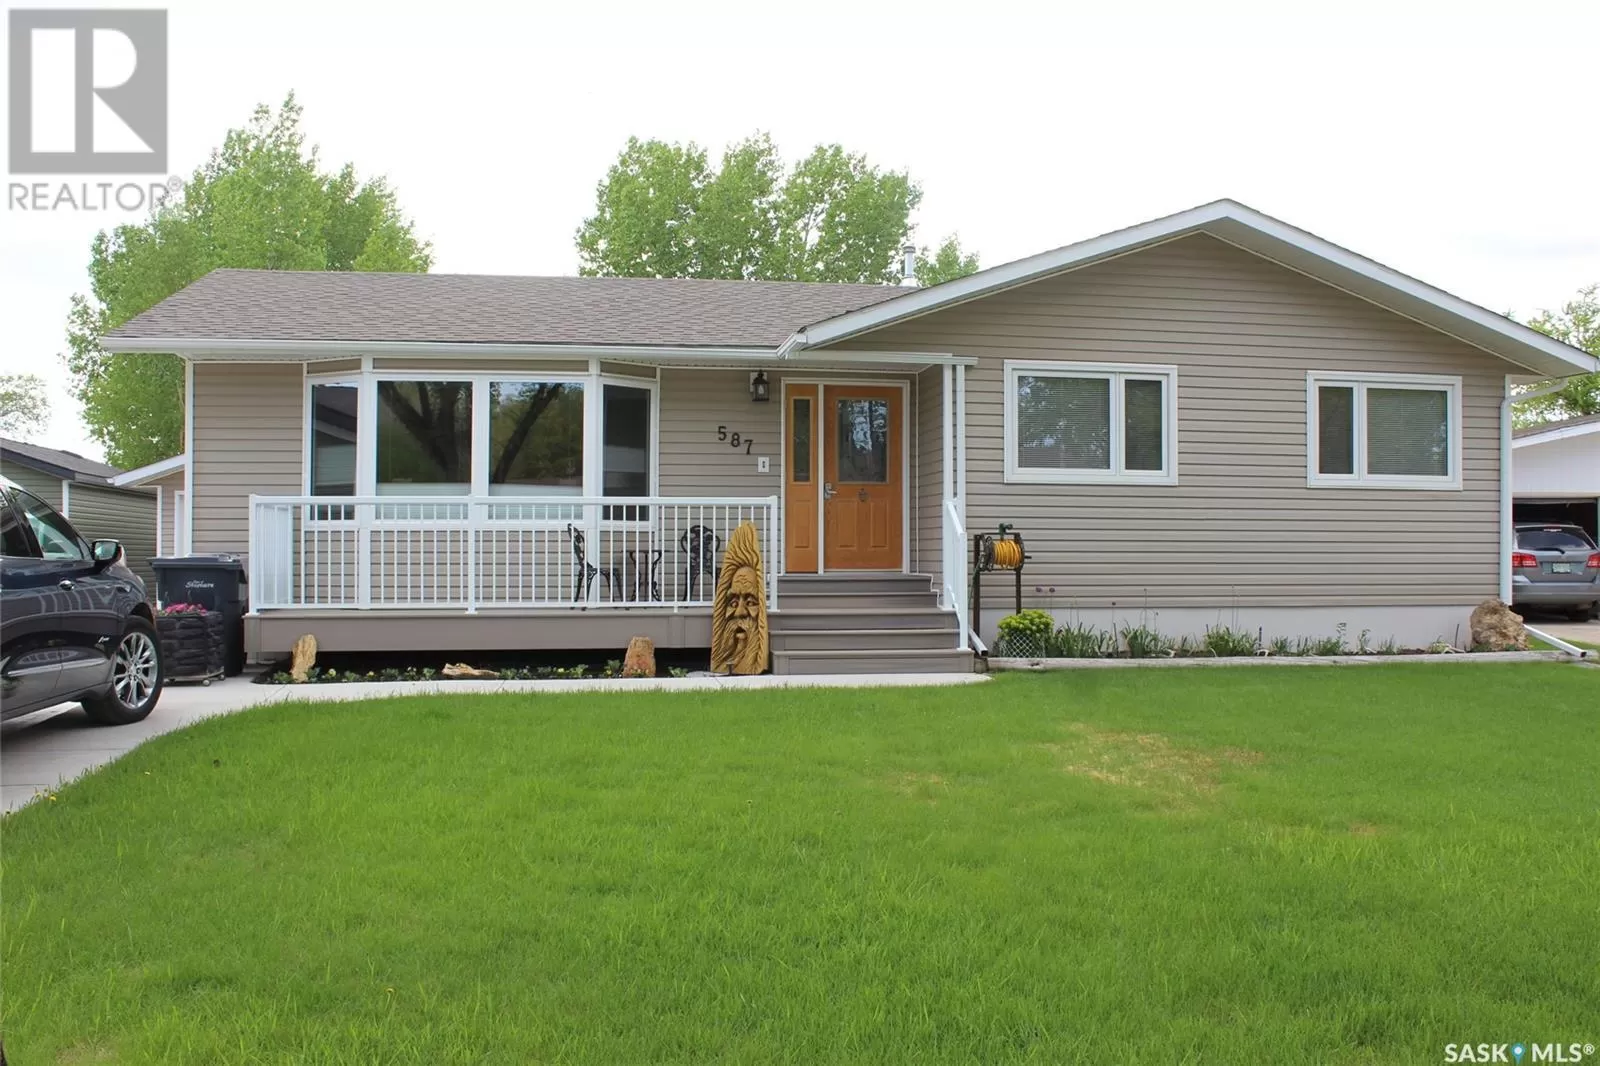 House for rent: 587 Poplar Crescent, Shaunavon, Saskatchewan S0N 2M0